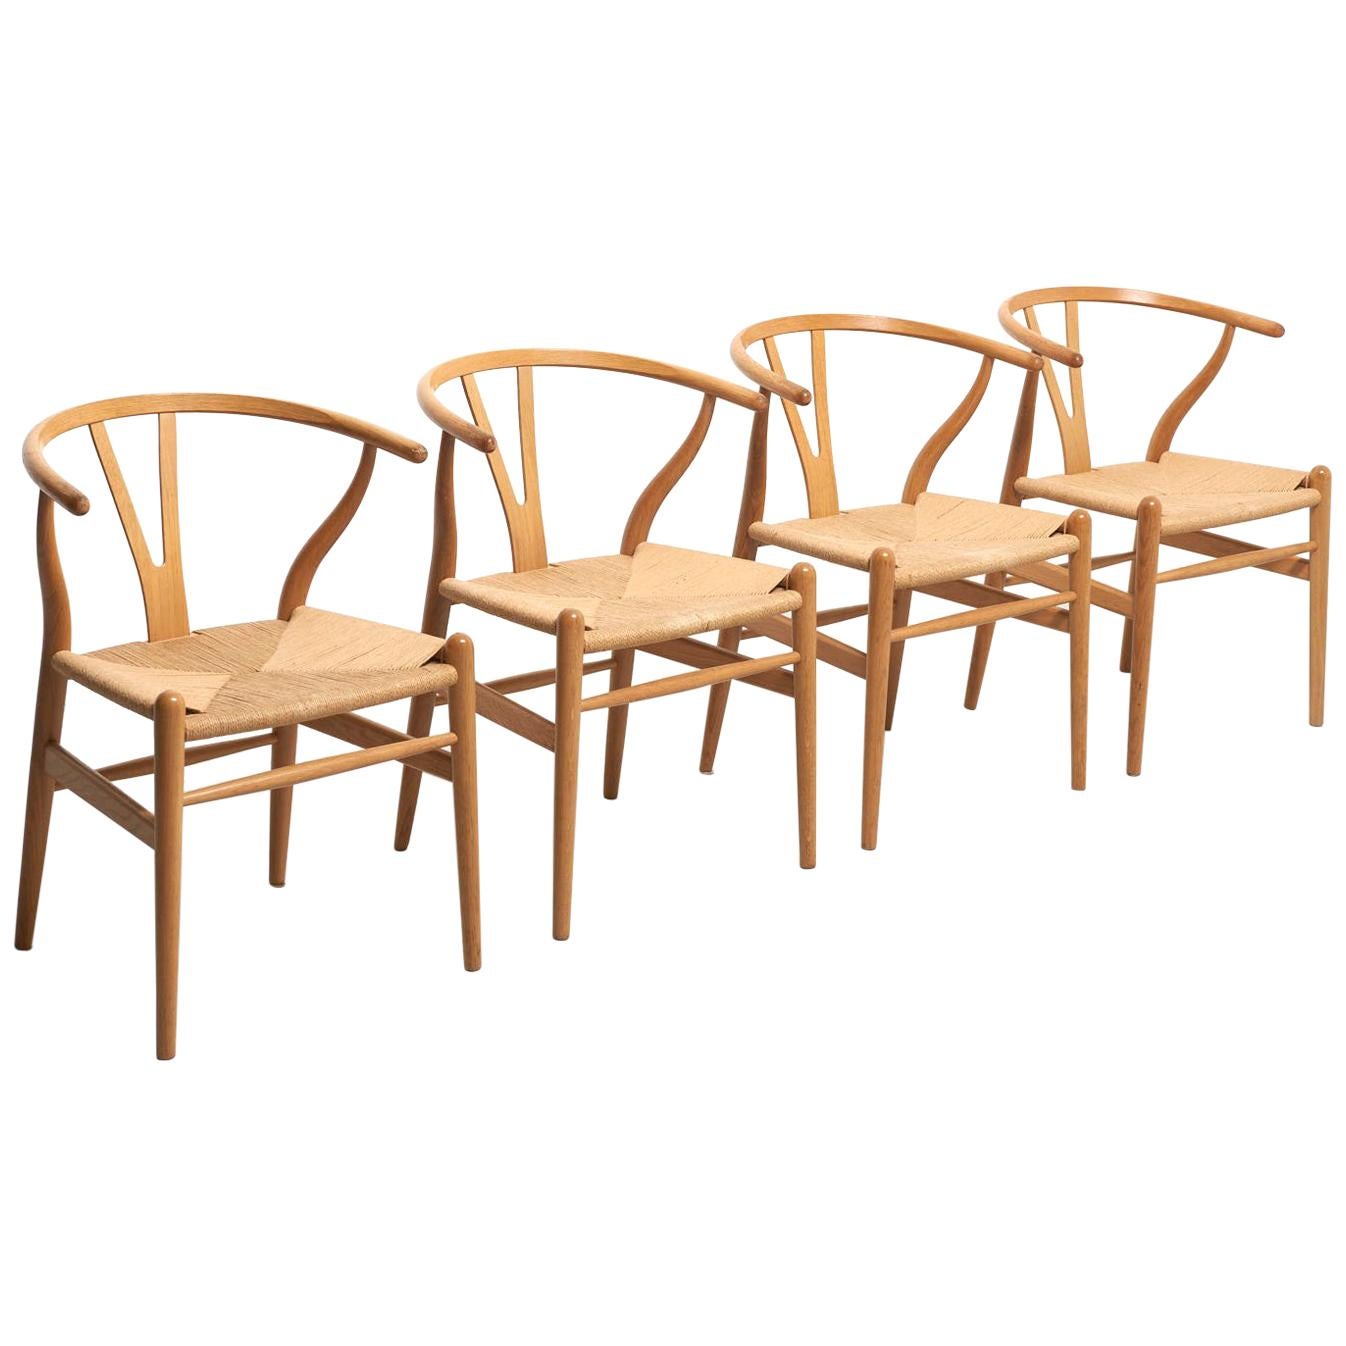 4 'Wishbone' Chairs in Oak Ch24 by Hans Wegner for Carl Hansen